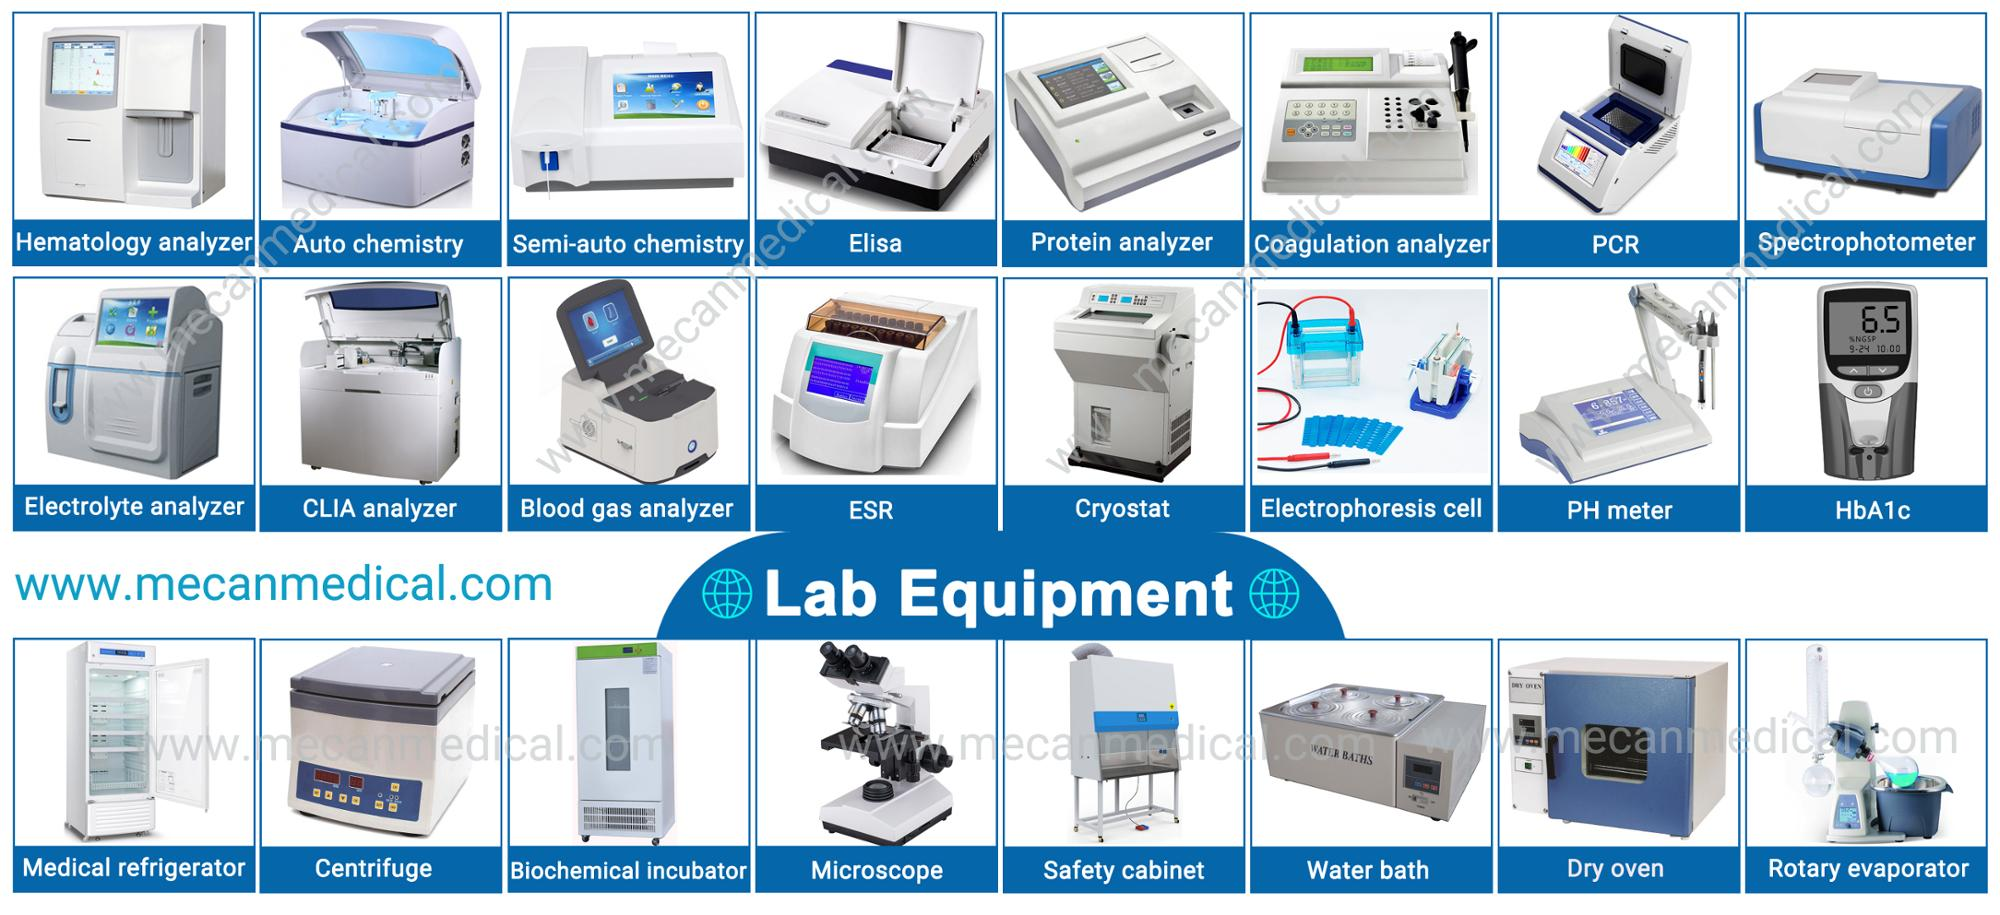 lab equipment.jpg